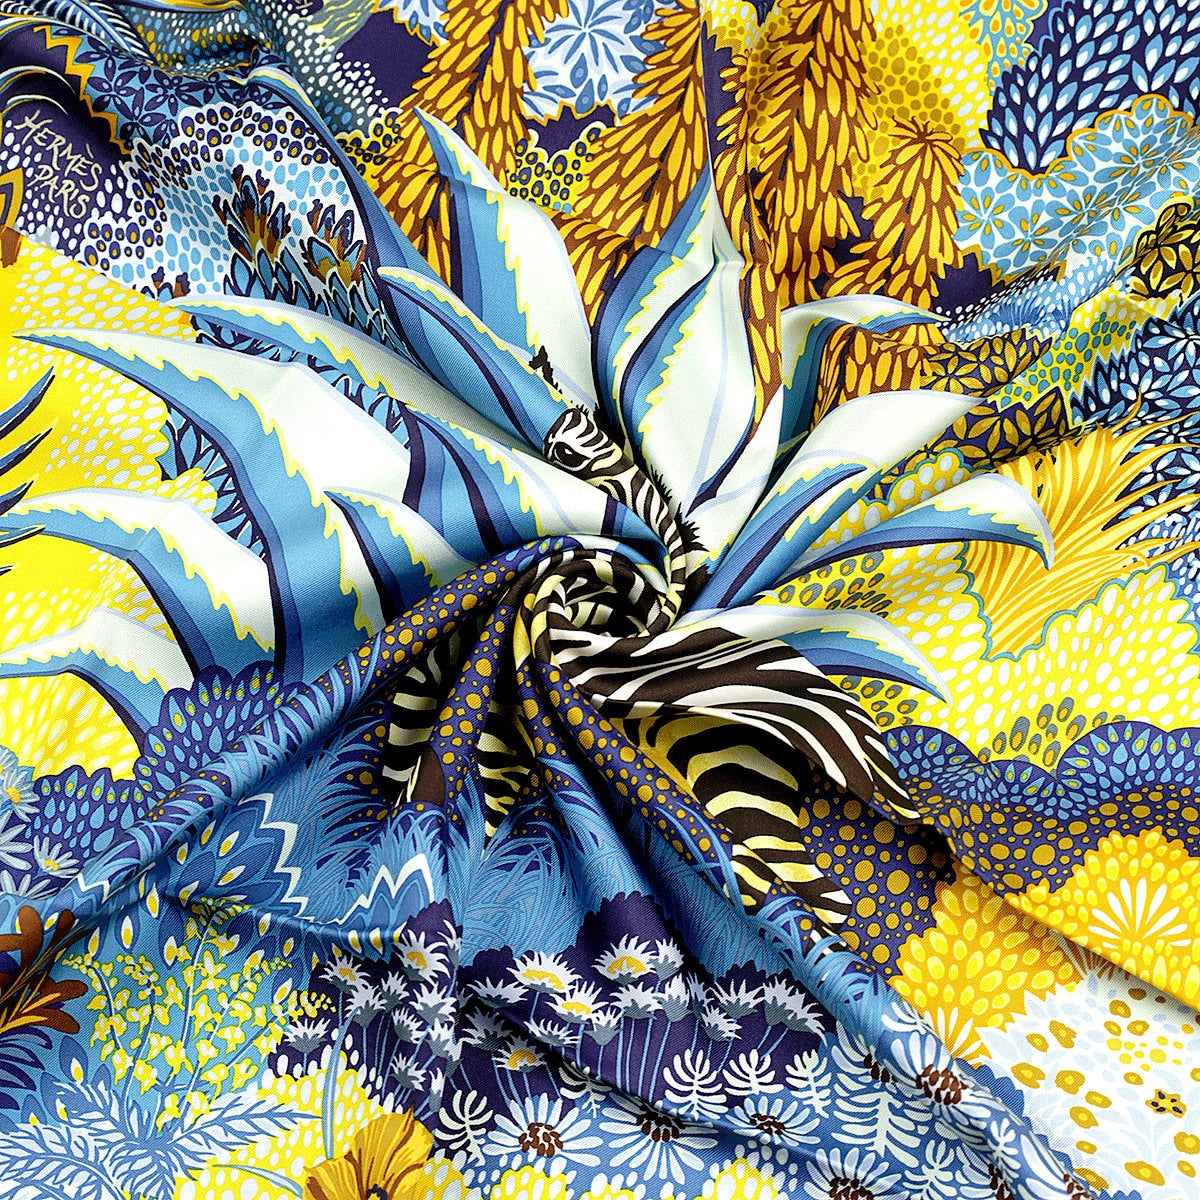 Hermes Scarf "Mountain Zebra" by Alice Shirley 90cm Silk | Carre Foulard